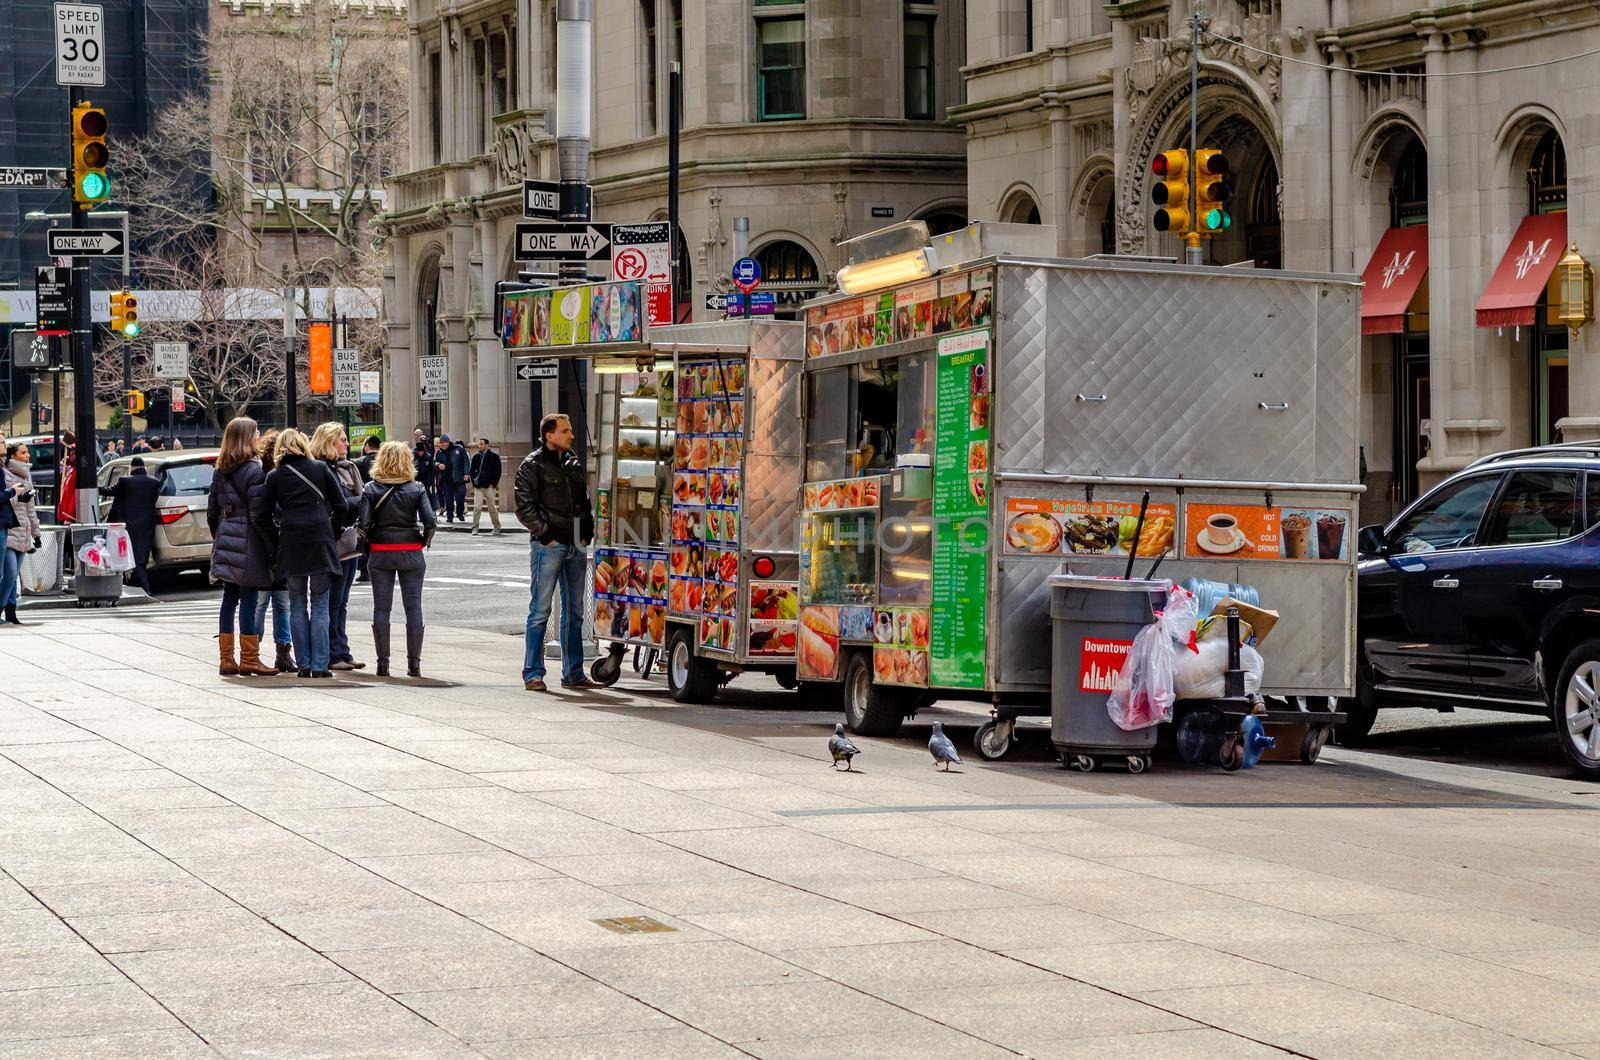 Two different Street Food Trucks in Manhattan, New York City by bildgigant